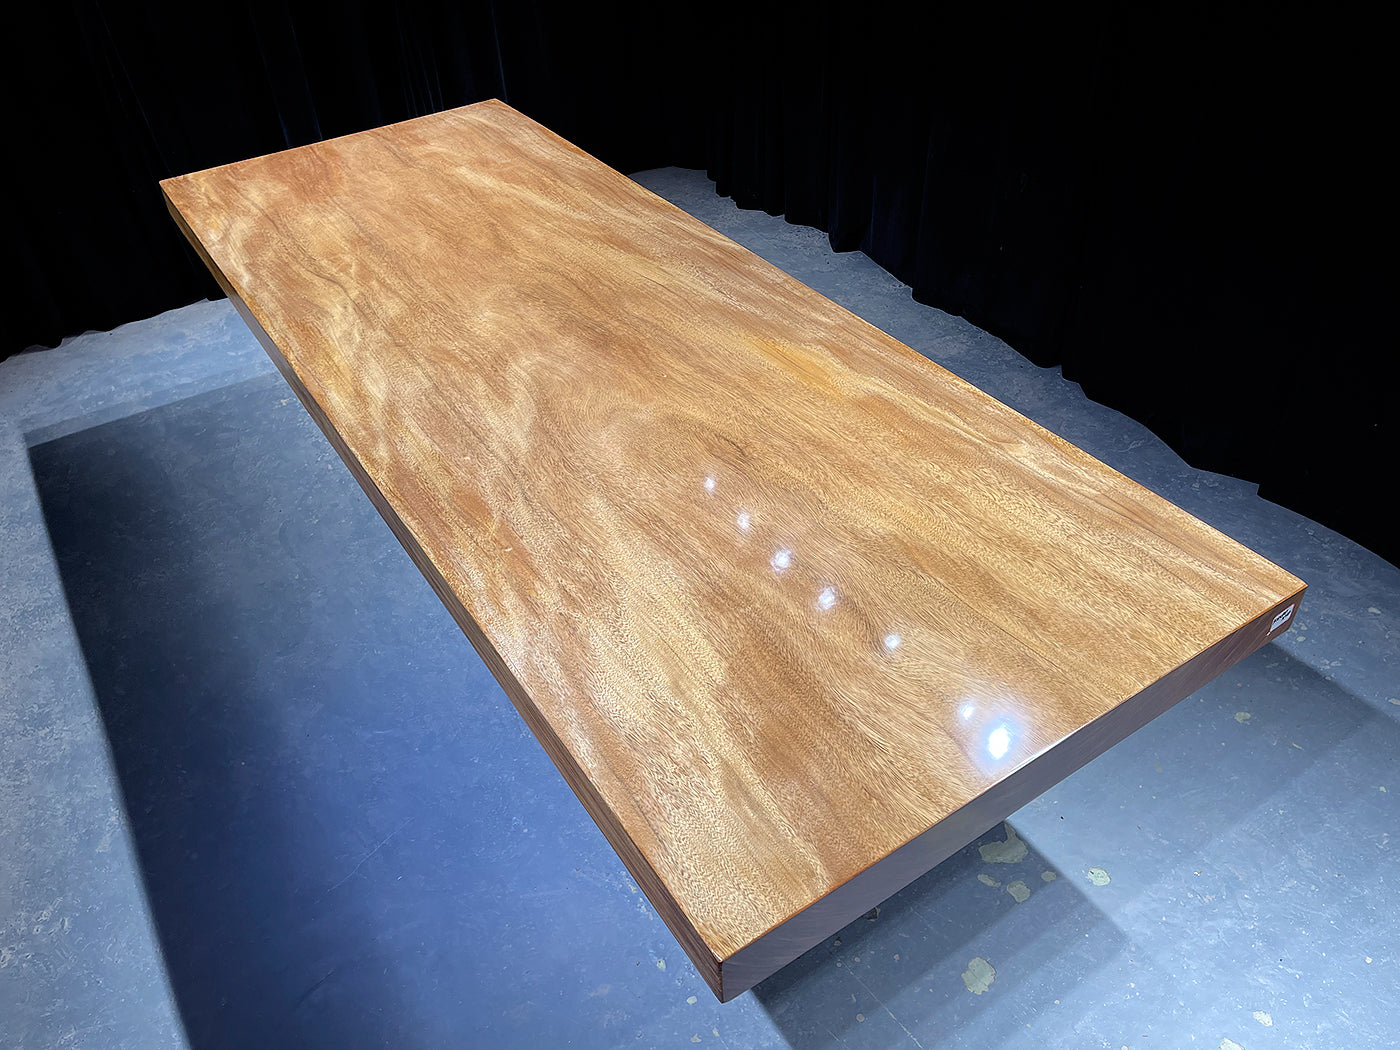 سطح الطاولة من لوح الخشب الطبيعي ذو الحافة الحية